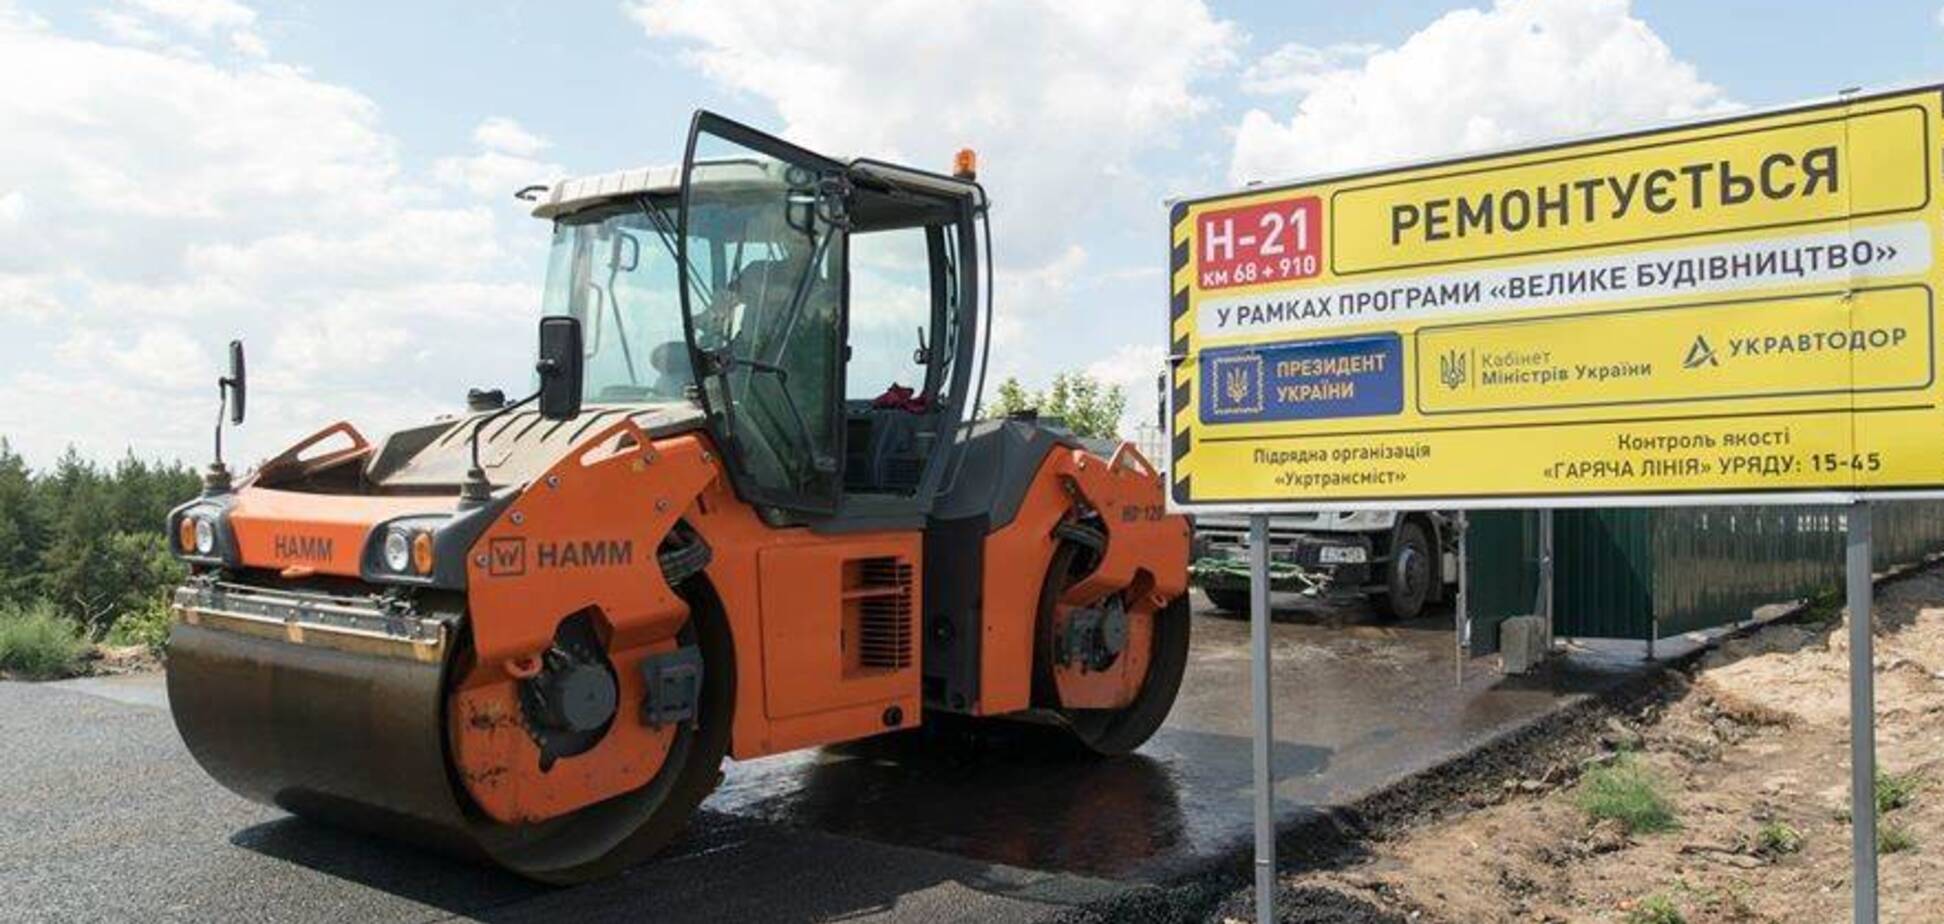 'Велике будівництво' дороги від Станиці Луганської до Сєвєродонецька вийшло на фінішну пряму